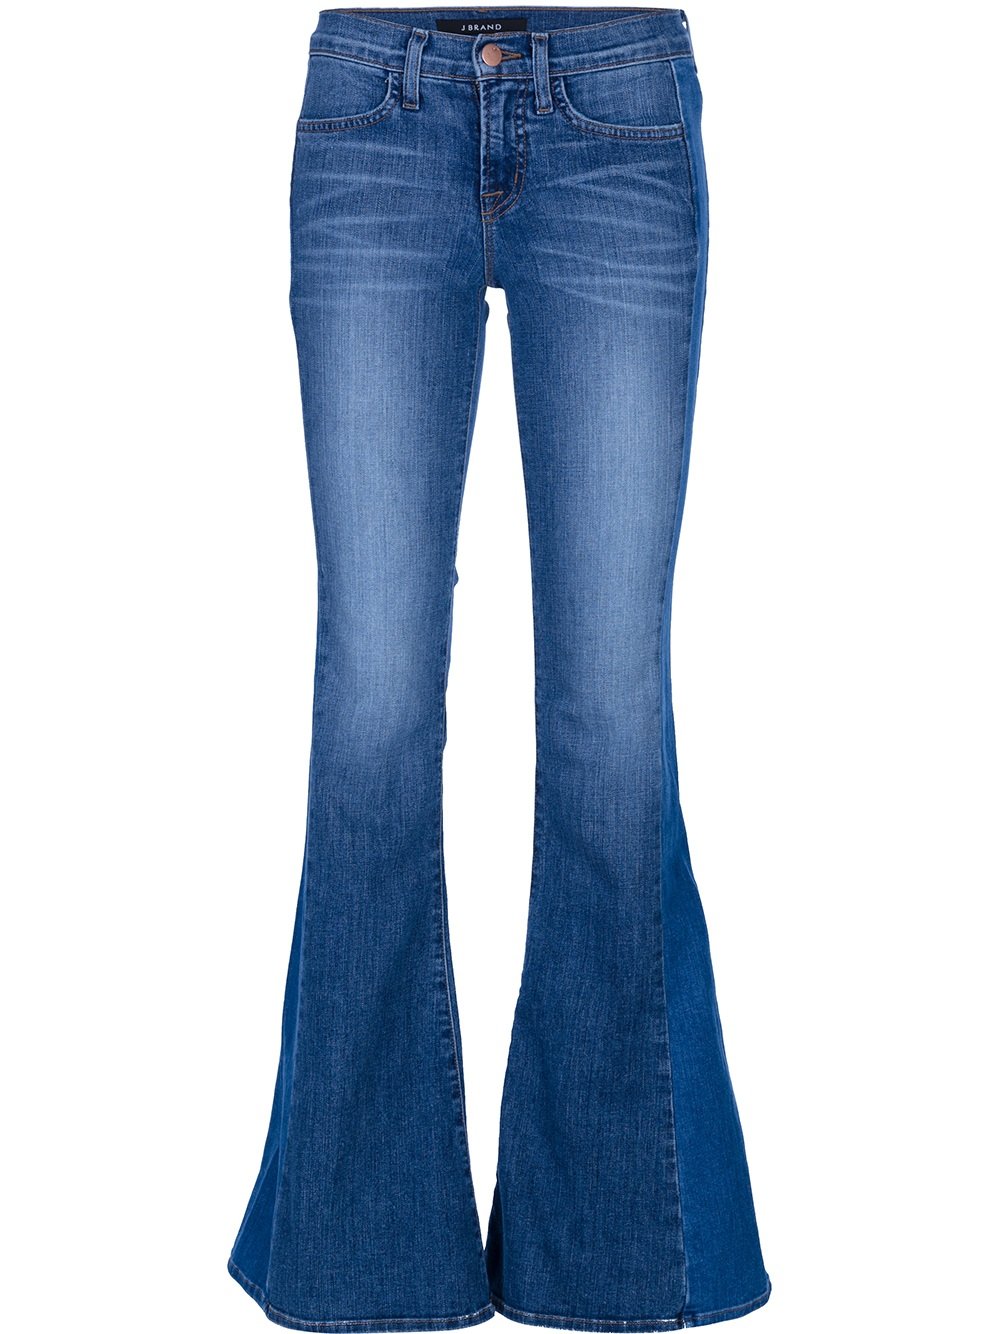 J Brand Bell Bottom Jean in Blue - Lyst